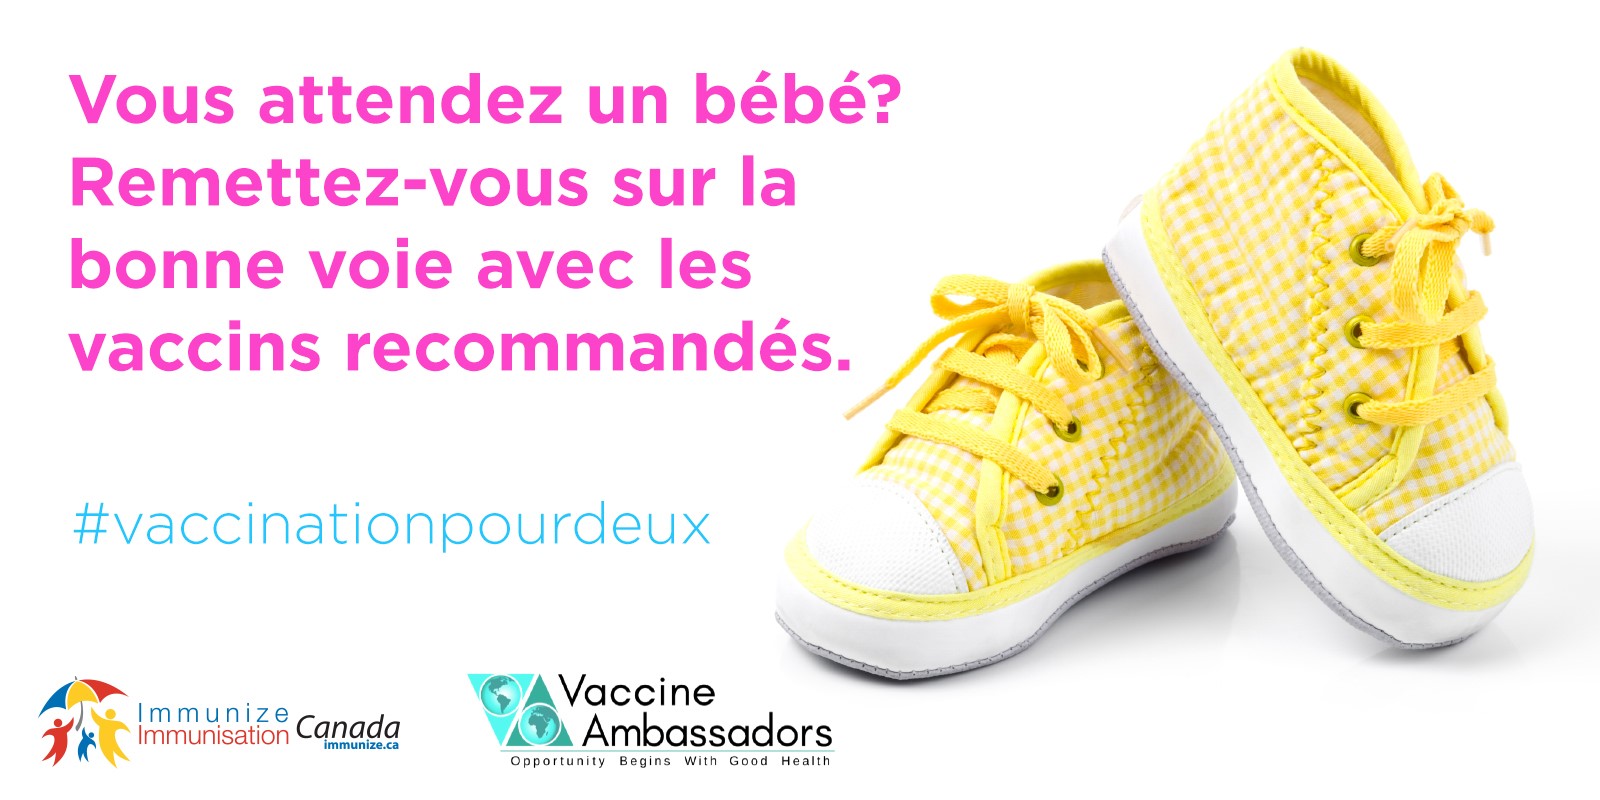 Vous attendez un bébé? Remettez-vous sur la bonne voie avec les vaccinations recommandées.